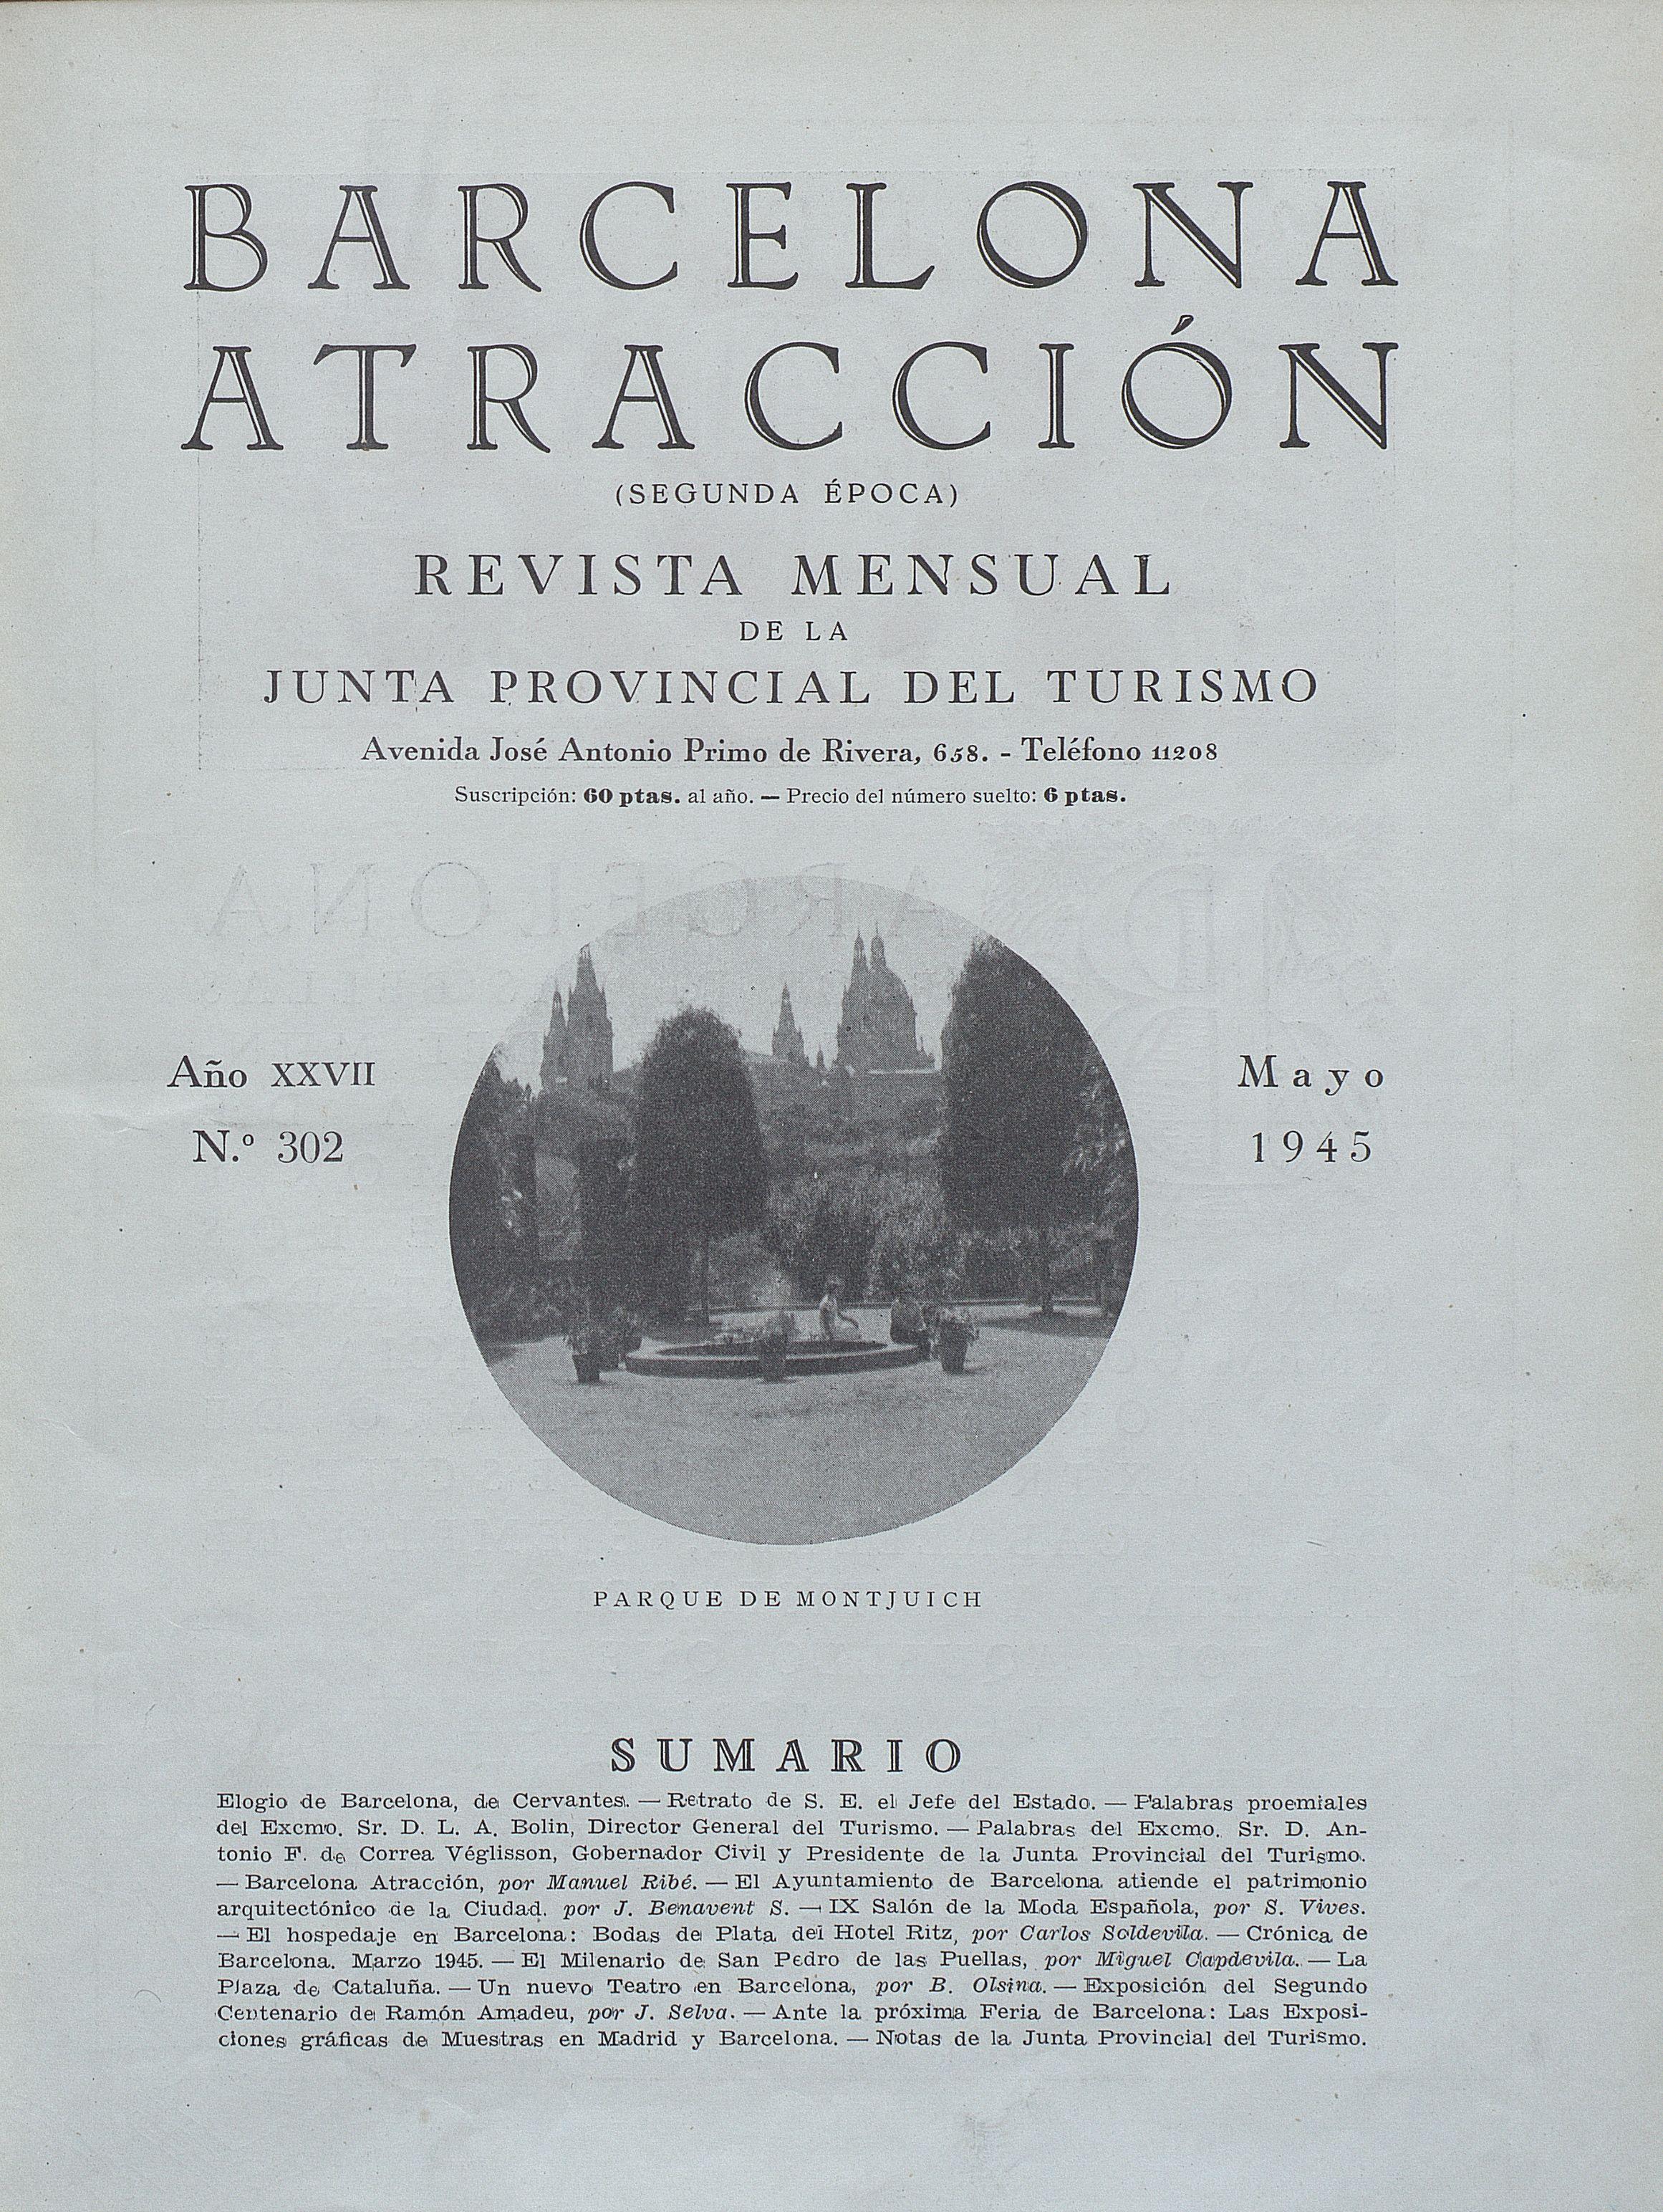 AHCB, Hemeroteca, Barcelona atracción, mayo de 1945  